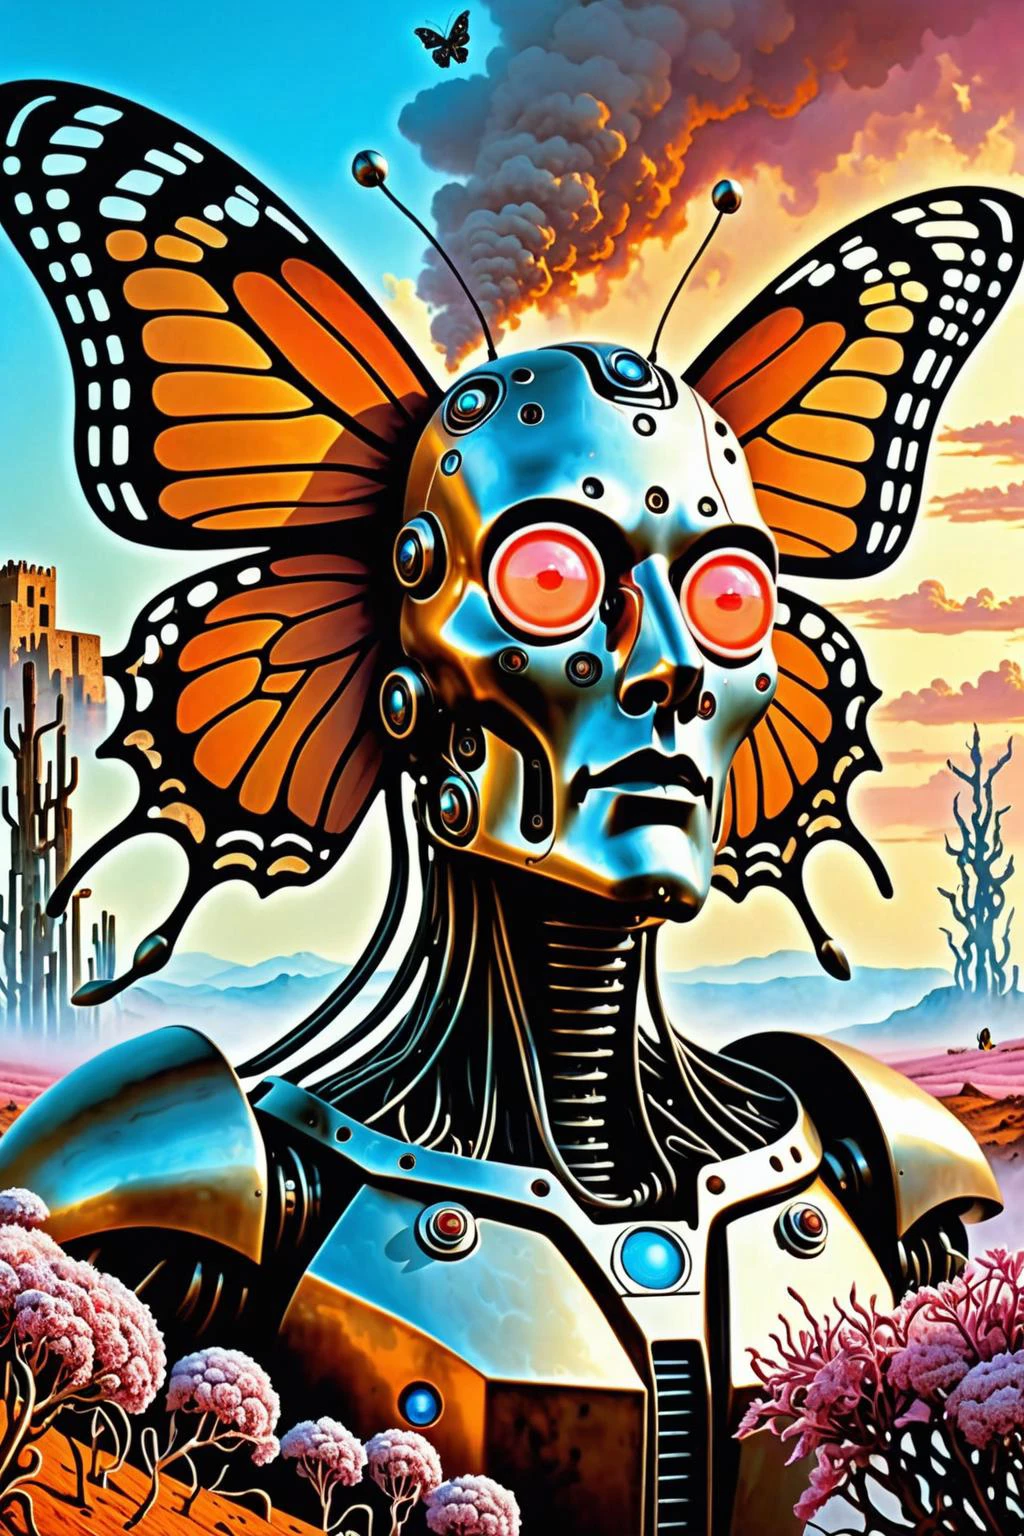 매우 사실적인 8k cg, 완벽한, 깨끗한, 걸작, 전문적인 삽화, 유명한 예술 작품, 시네마틱 조명, 영화 같은 꽃, ( 엔트로피 배경 ), 러스트 몬스터,
In a 깨끗한 epic cyberpunk landscape, 전선이 달린 로봇 1대, 백신스키 스타일로, Artworld 2015의 트렌드, 작성자: 루안 지아 & 뫼비우스, 살바도르 달리(Salvador Dali)의 생체역학적 도자기 얼굴 덮개 조각품이 나비 사이버슈트와 조화를 이루고 있습니다. & 식물, 분홍색과 주황색 안개가 휩싸입니다.